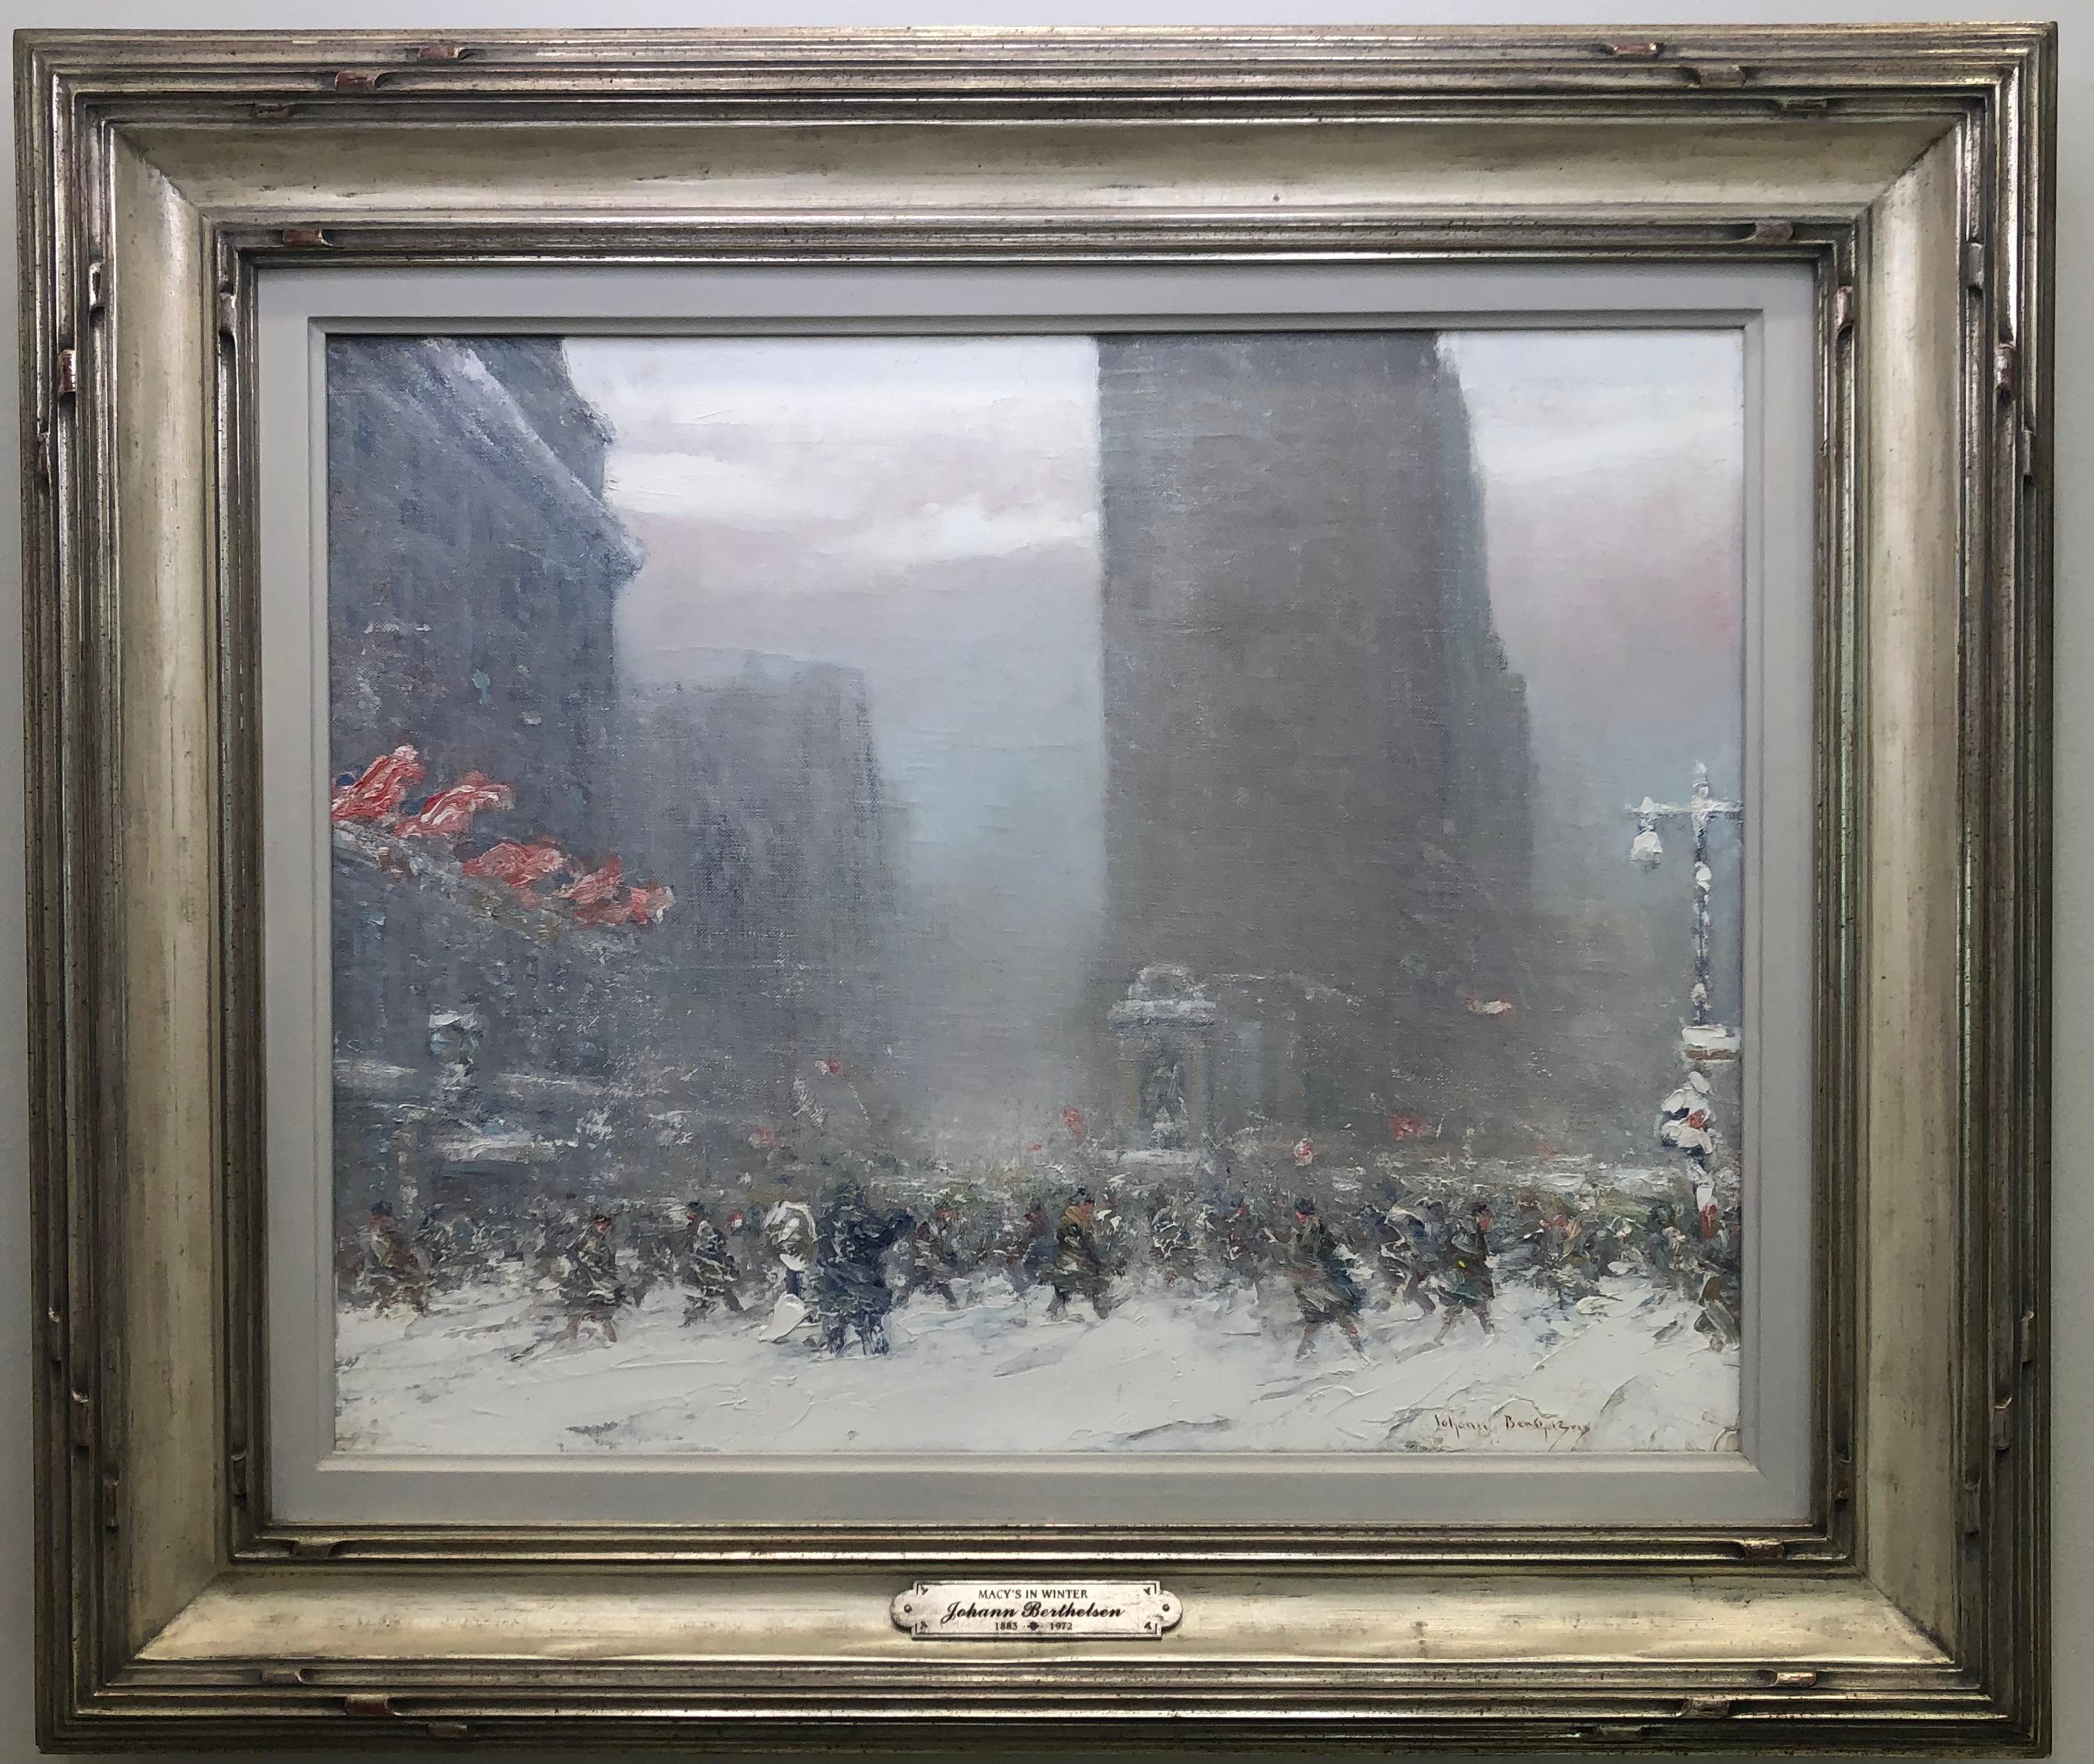 Macy's im Winter (Impressionismus), Painting, von Johann Berthelsen